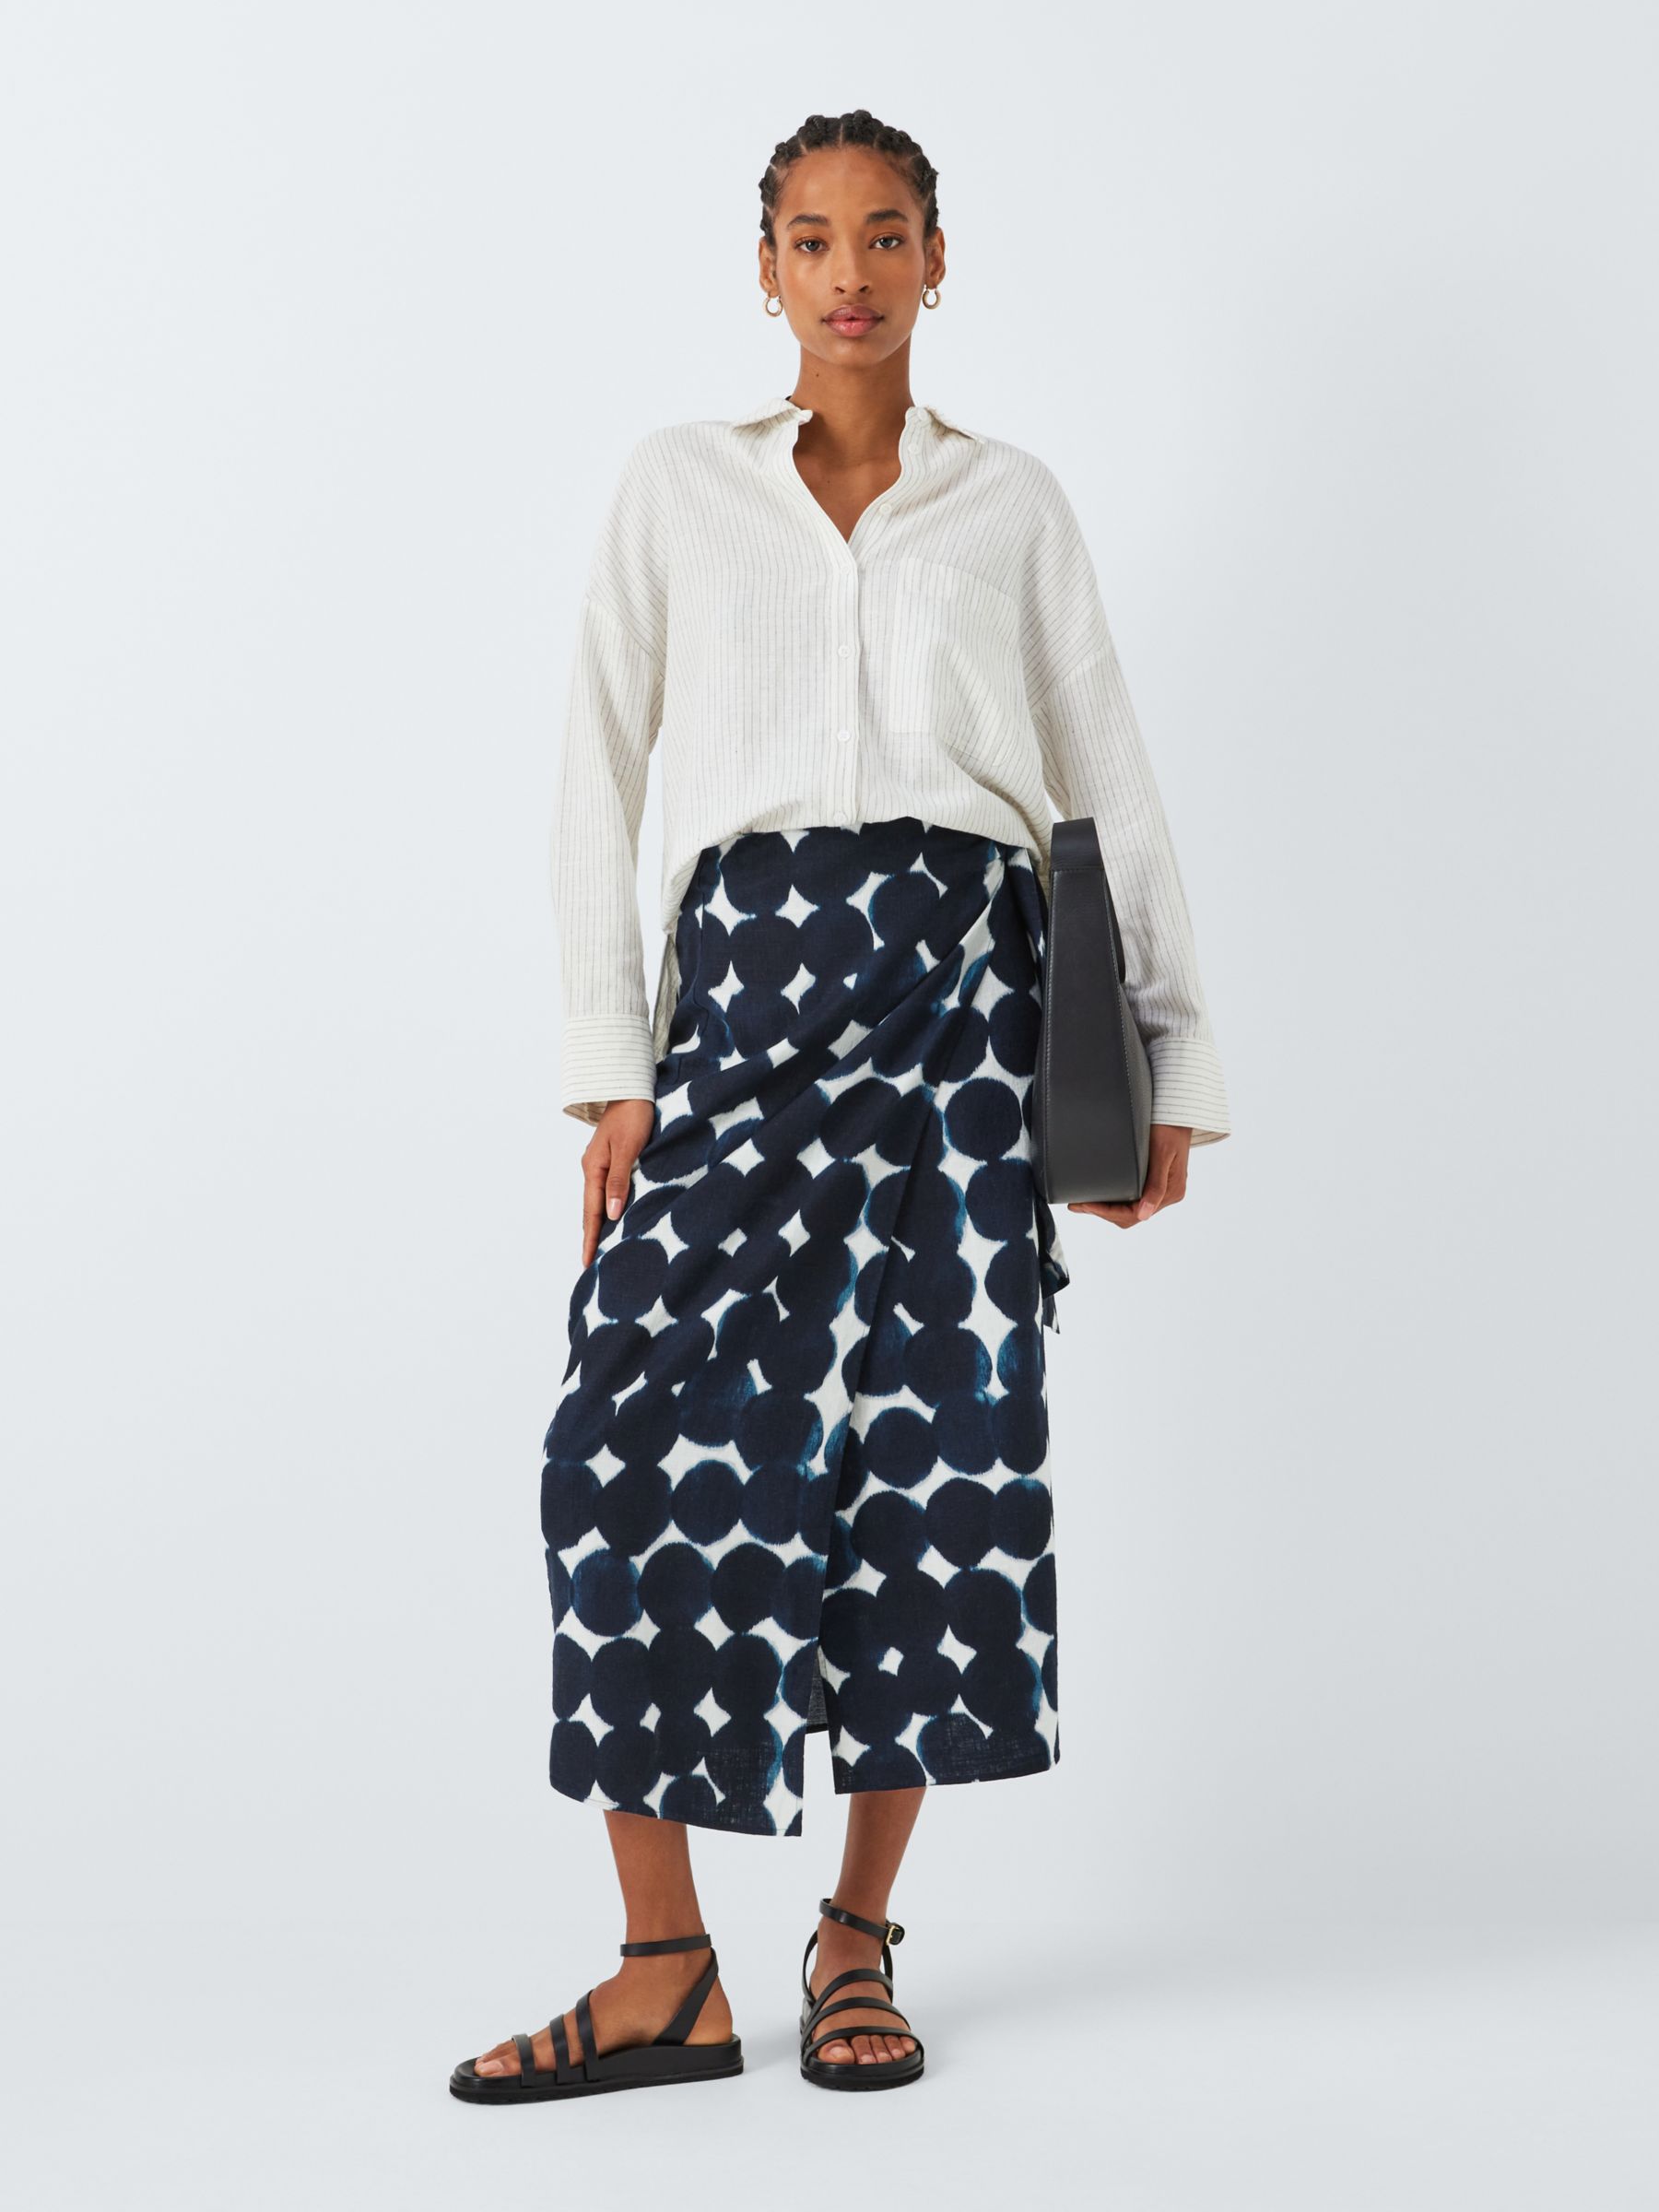 John Lewis Haze Spot Print Linen Blend Skirt, Blue/Multi, 12